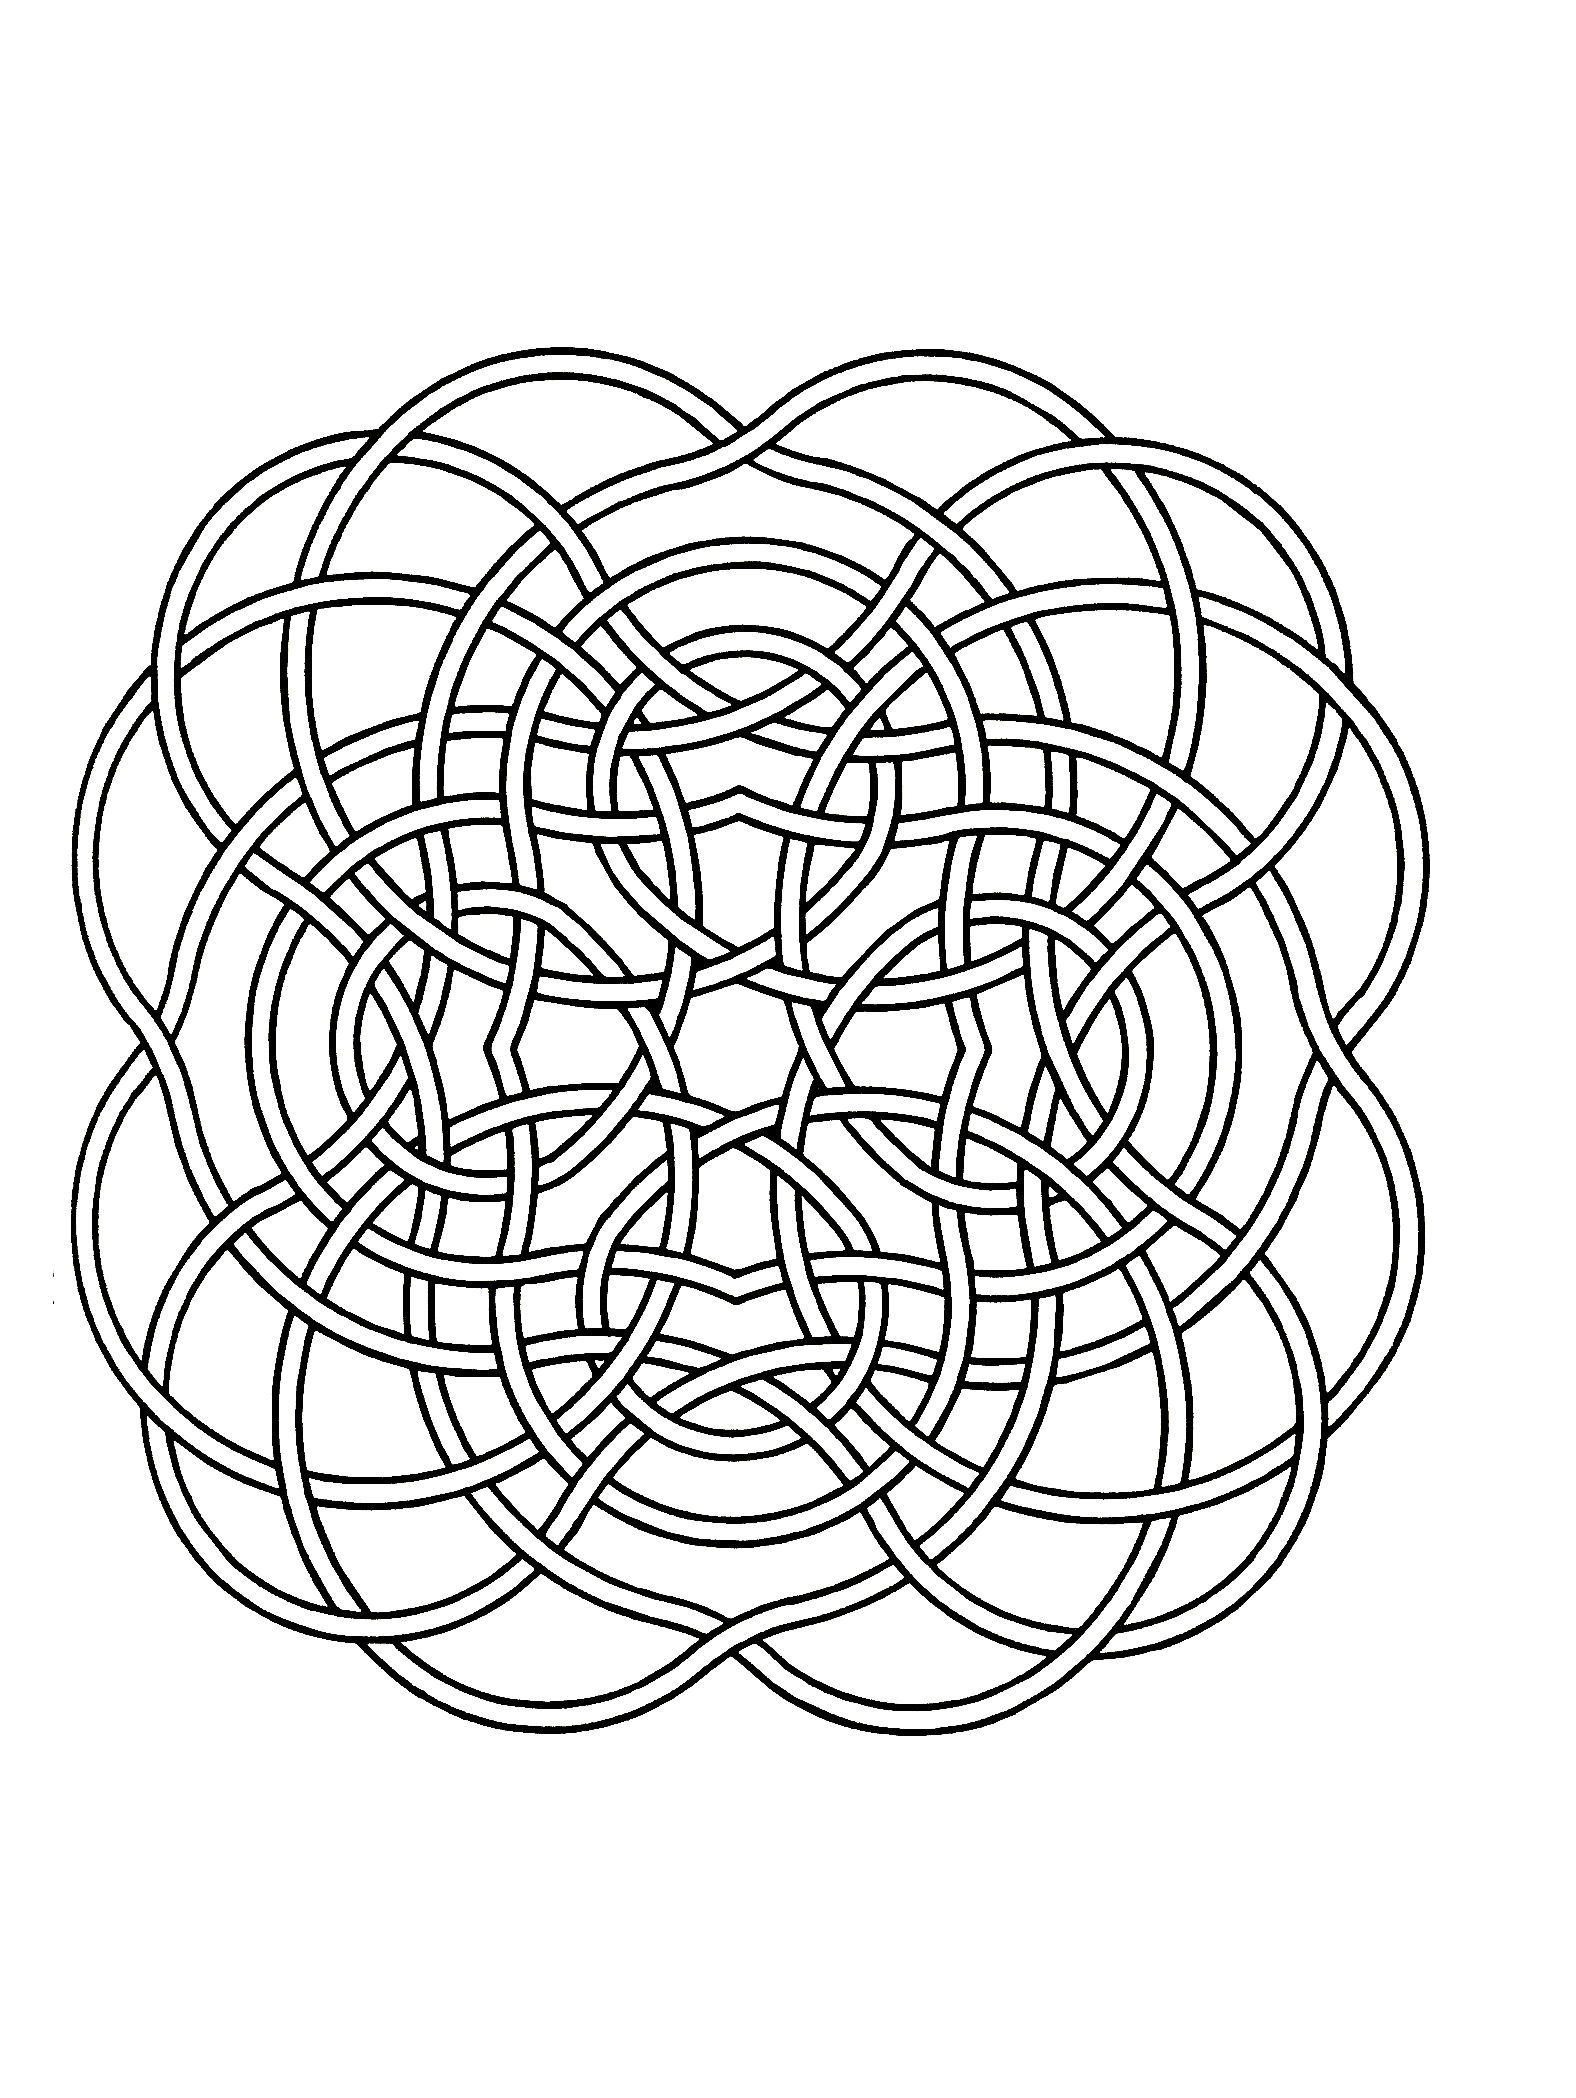 Laissez exprimer votre créativité pour colorier cet incroyable Mandala composé d'une sorte de ruban sans début ni fin ! Faites exprimer vos envies et vos désirs dans la réalisation de ce coloriage.